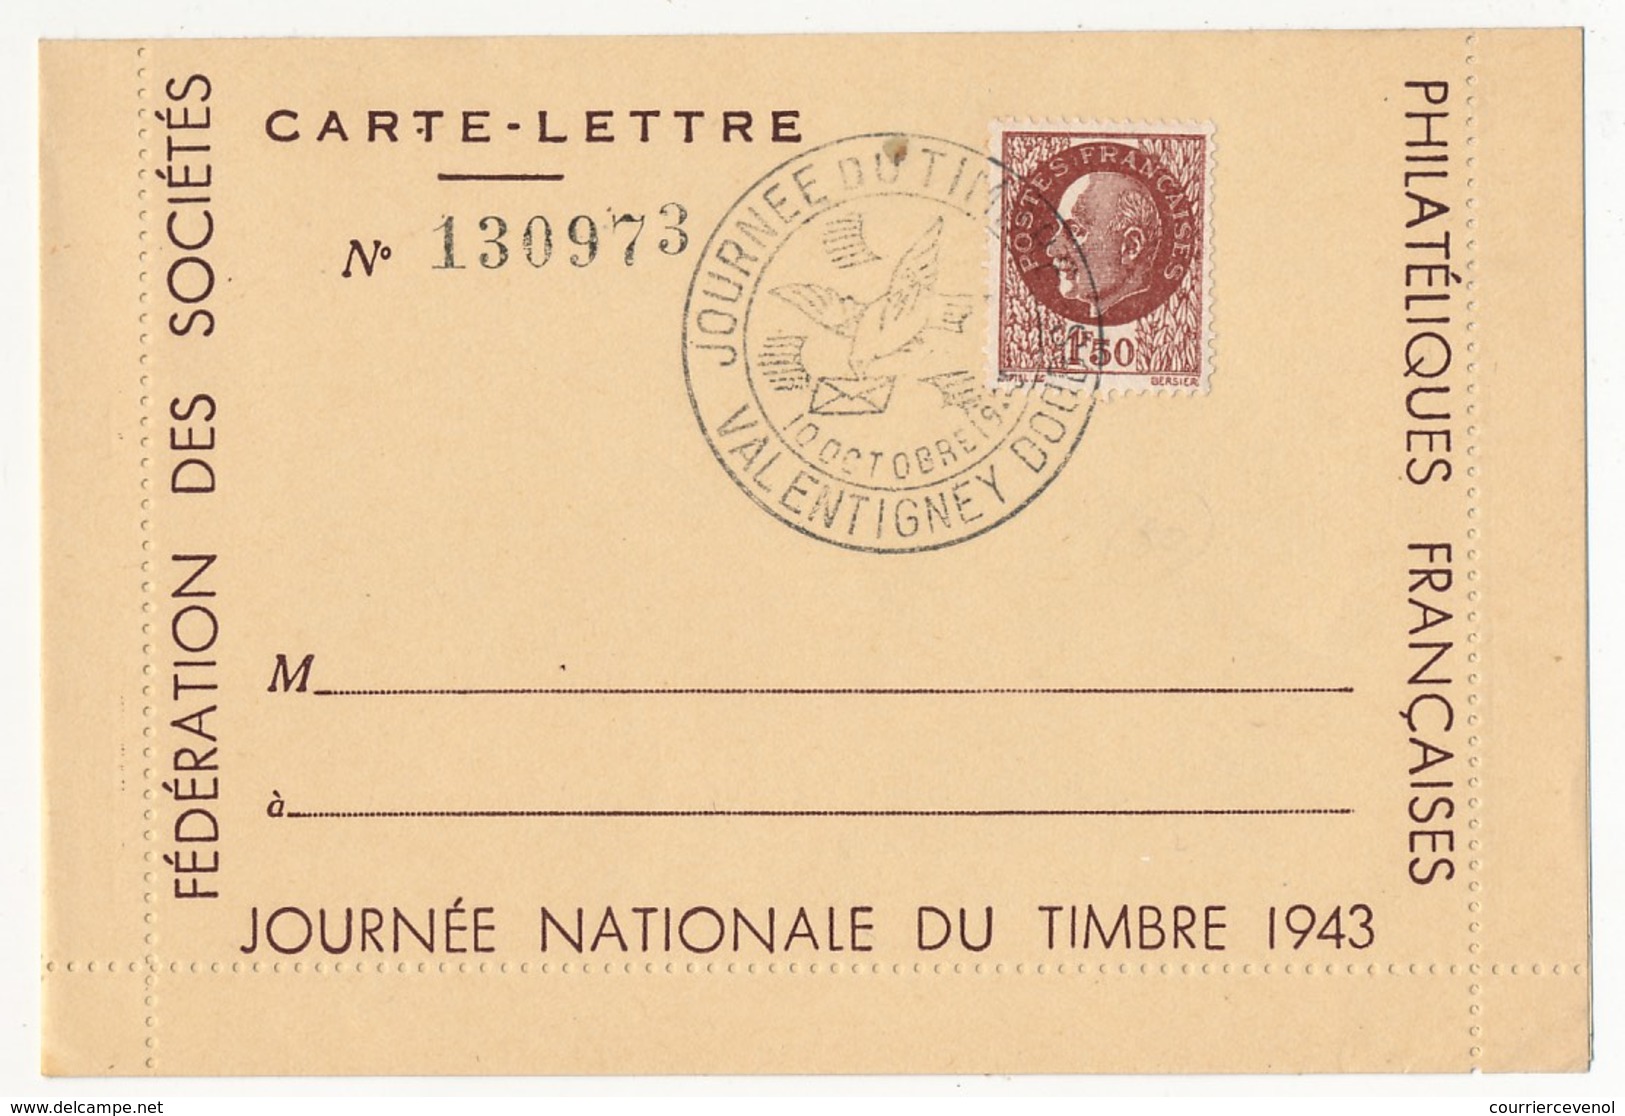 FRANCE - Carte-lettre Illustrée - Journée Du Timbre 1943 VALENTIGNEY - Affr 1,50 Bersier, Cachet Temporaire - Journée Du Timbre